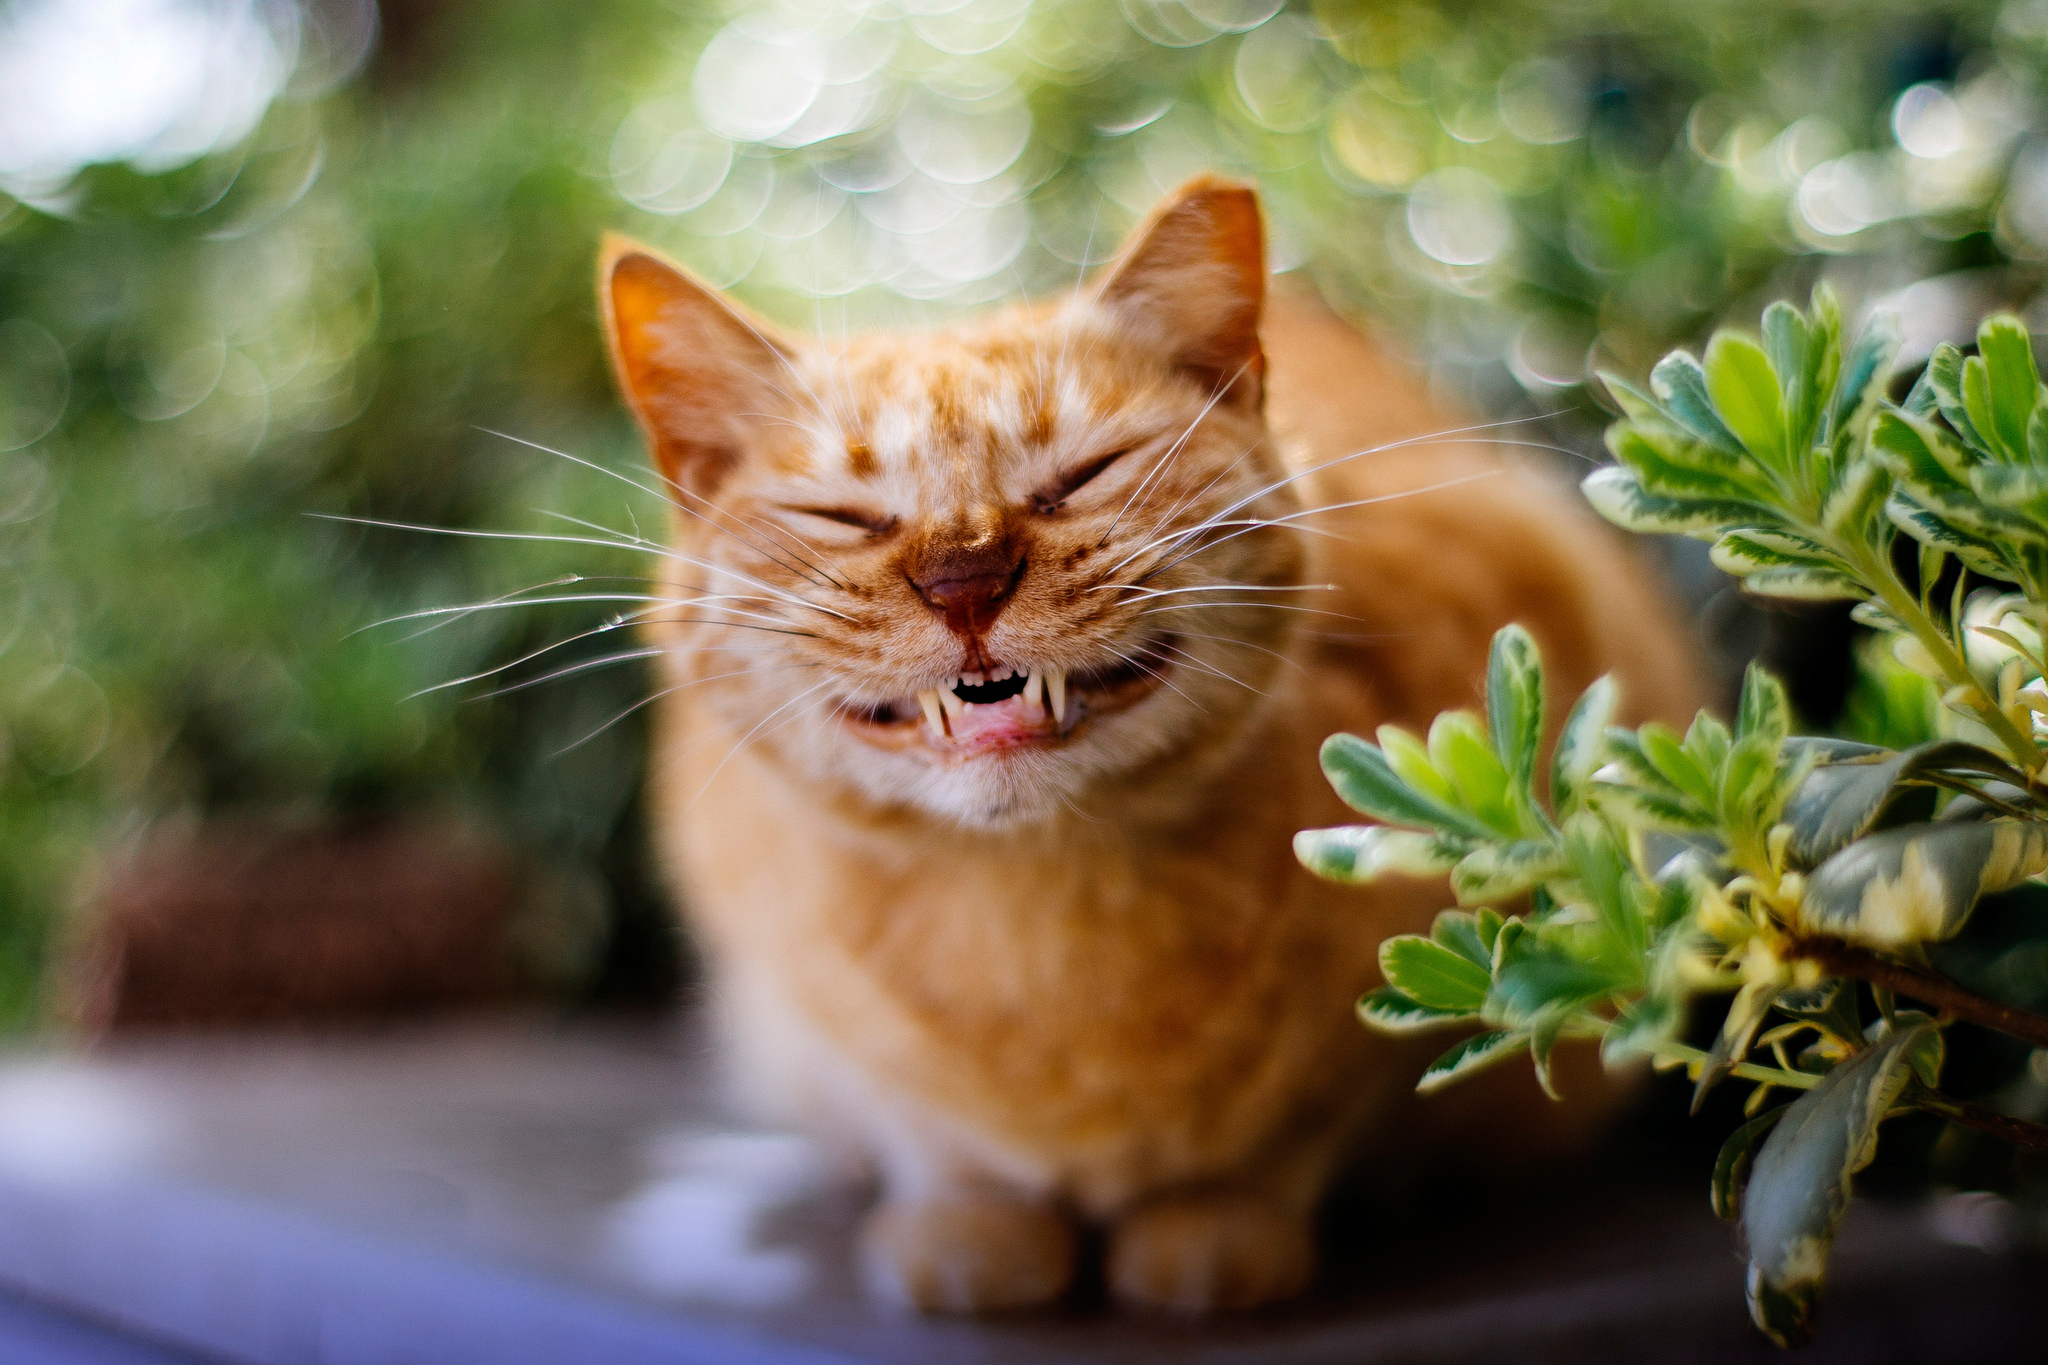 Позитивные картинки для поднятия настроения. Веселые кошки. Котенок улыбается. Смешной кот. Картинки прикольные для настроения.